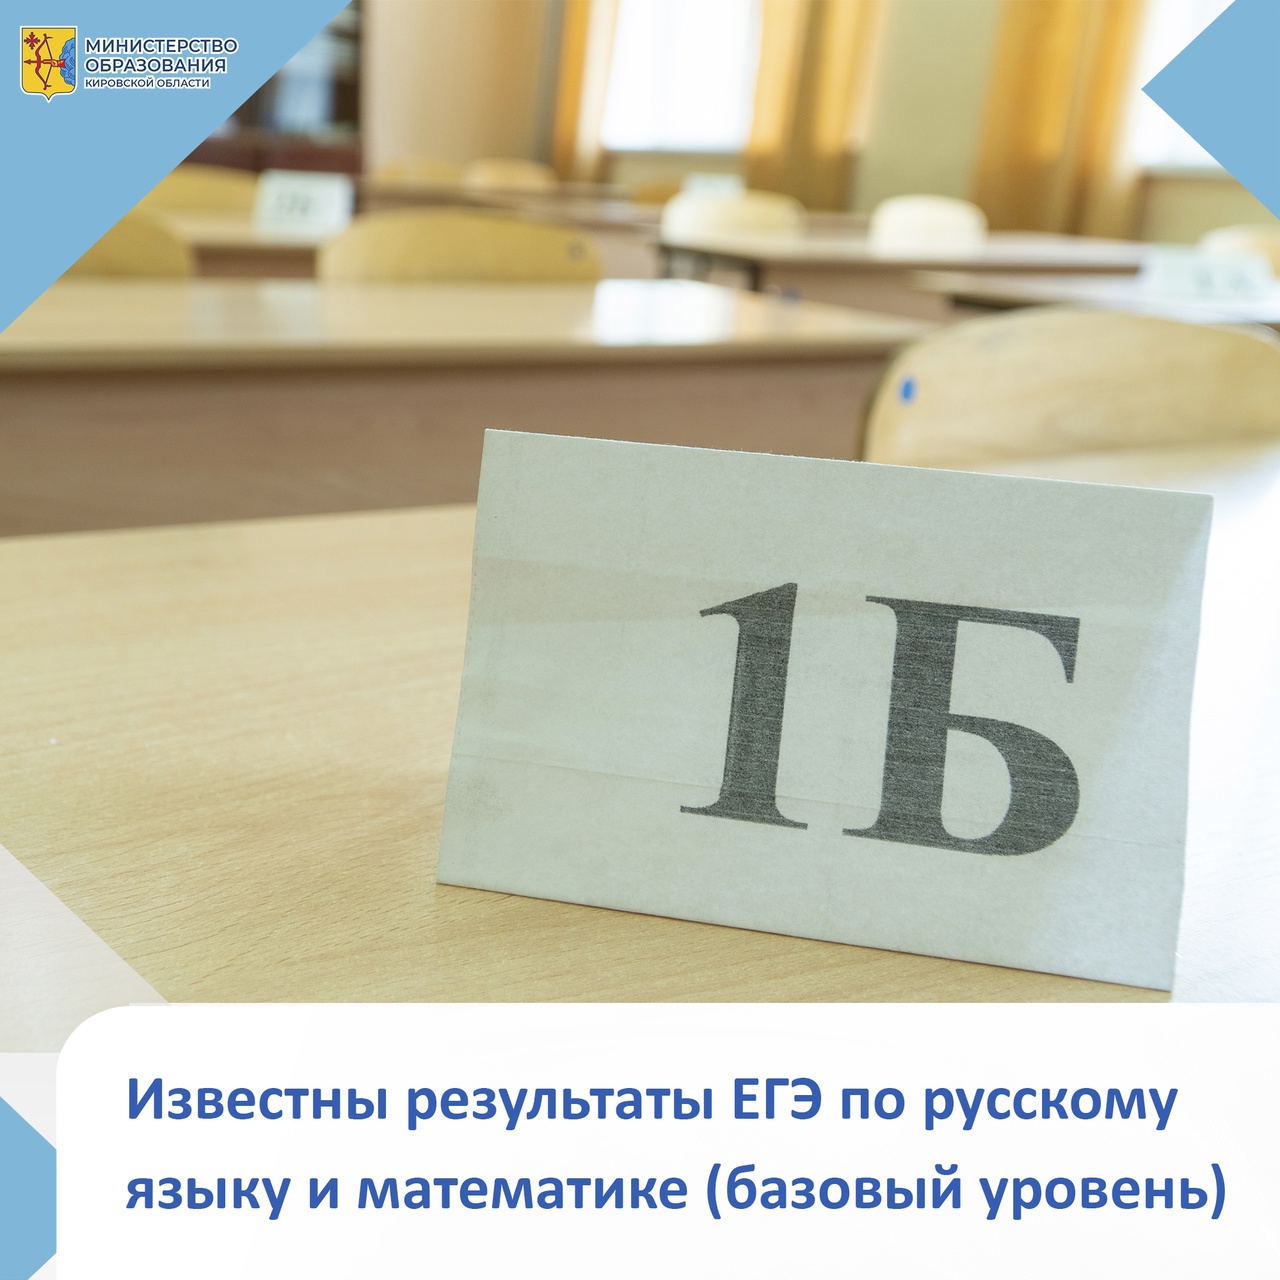 15 июня – официальный день объявления результатов ЕГЭ по русскому языку и математике (базовый уровень)..